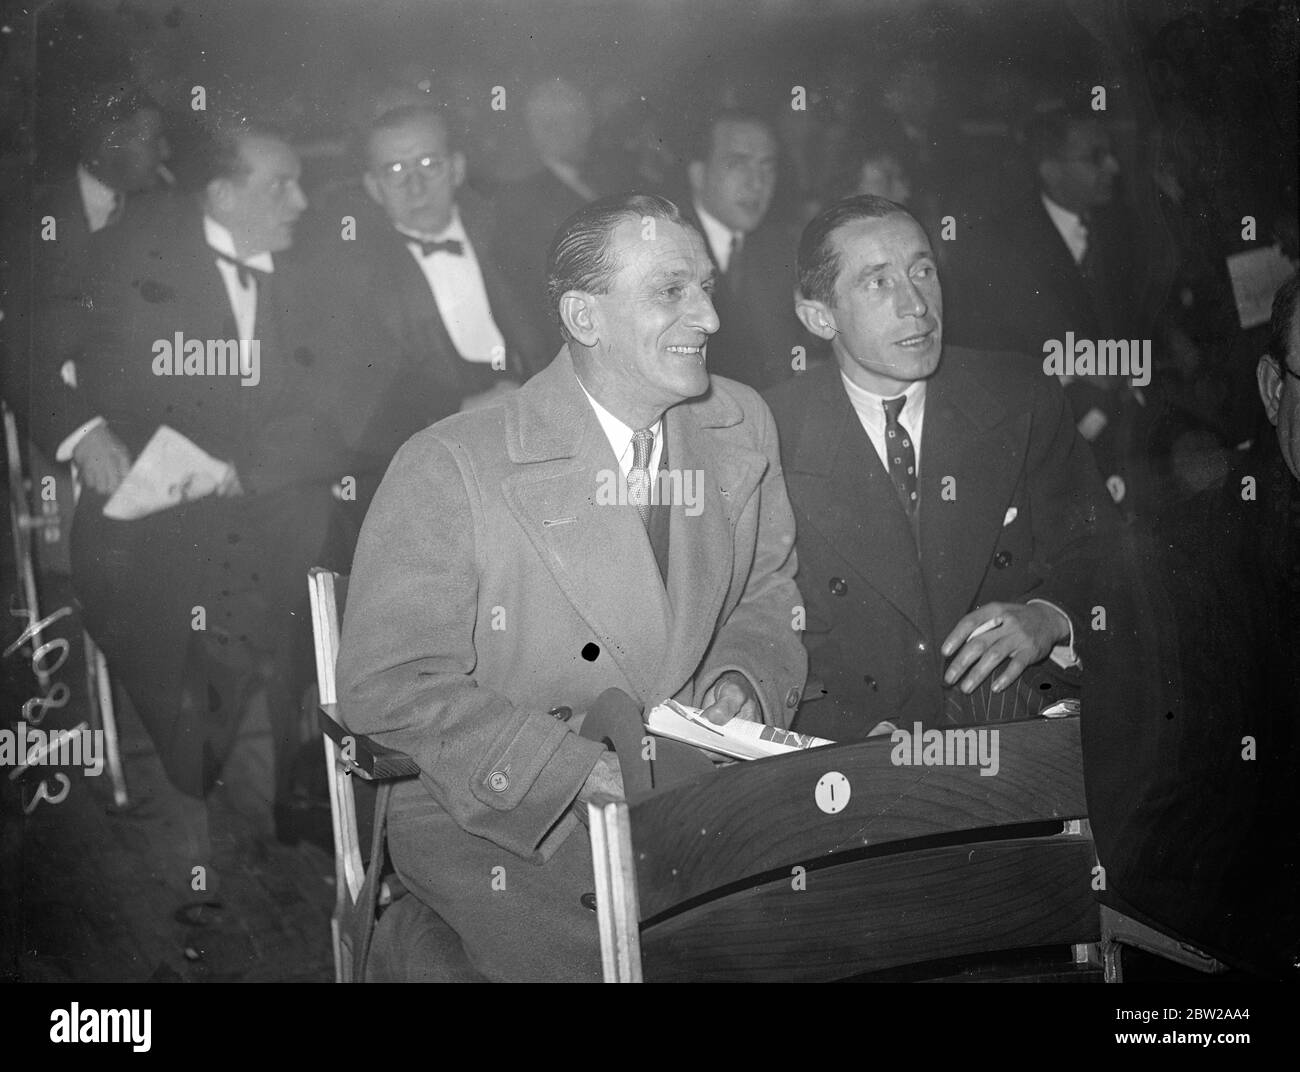 Jockeys à Phillips - Skolblin Fight. Les Londoniens gagnent. Bernard Carslake (à gauche) et Harry Wragg, aux jockeys au bord du ring pendant le combat à Harringay Arena, Londres. 4 novembre 1937 Banque D'Images